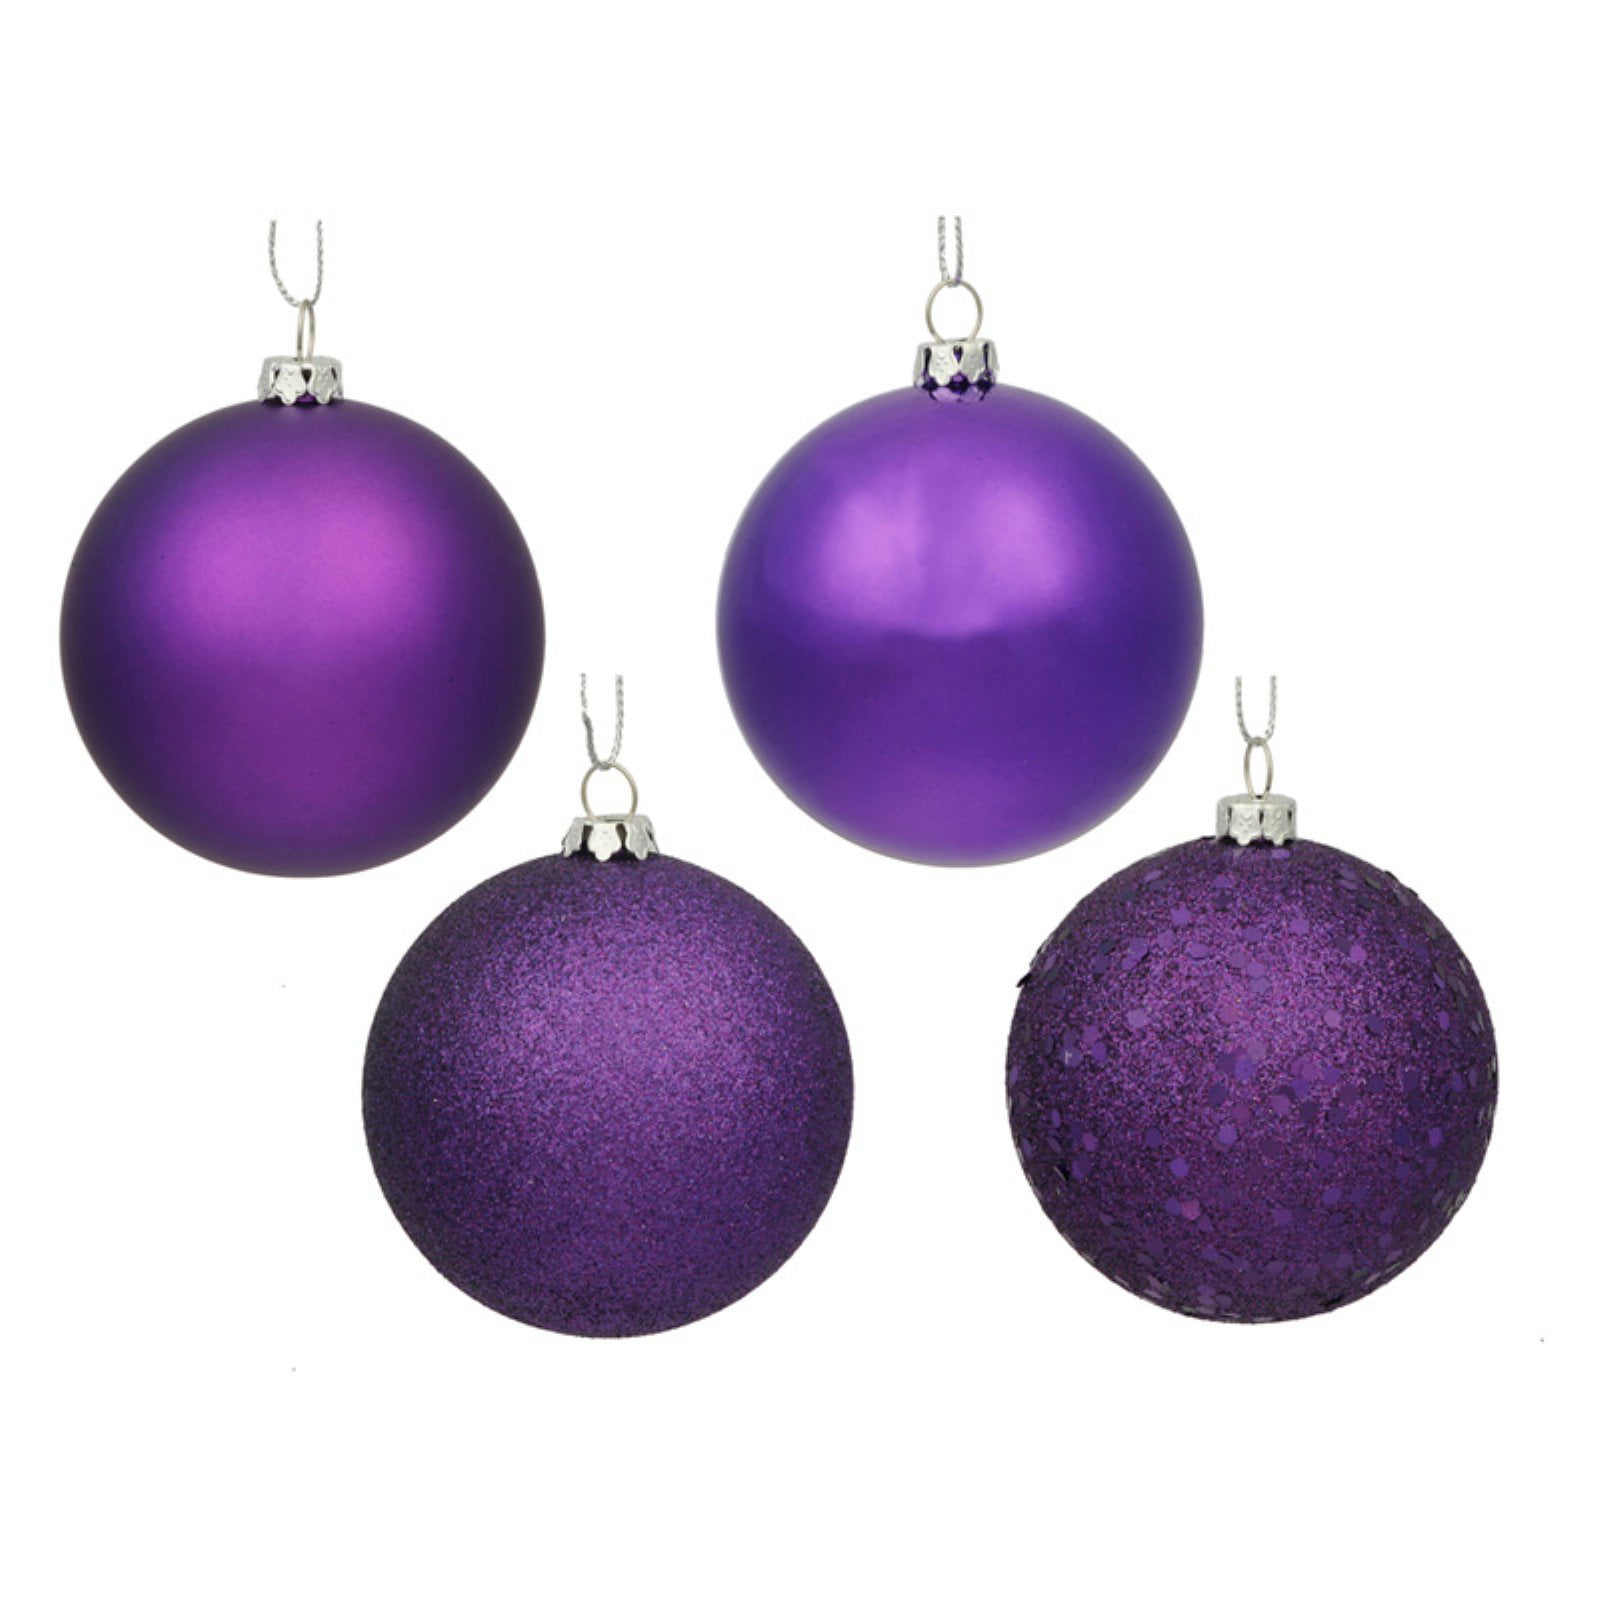 Includes 4 Ornaments per Box. Vickerman 8 Purple 4-Finish Ball Ornament Set 